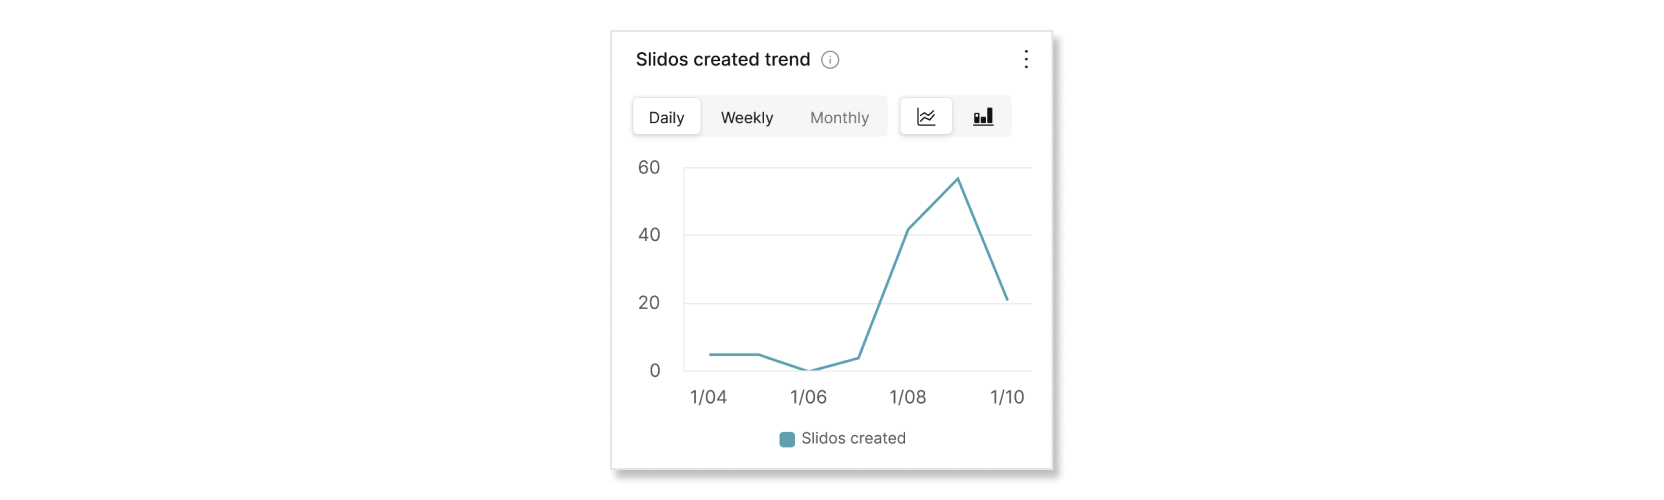 Slido s criou um gráfico de tendências na Slido análise do Control Hub